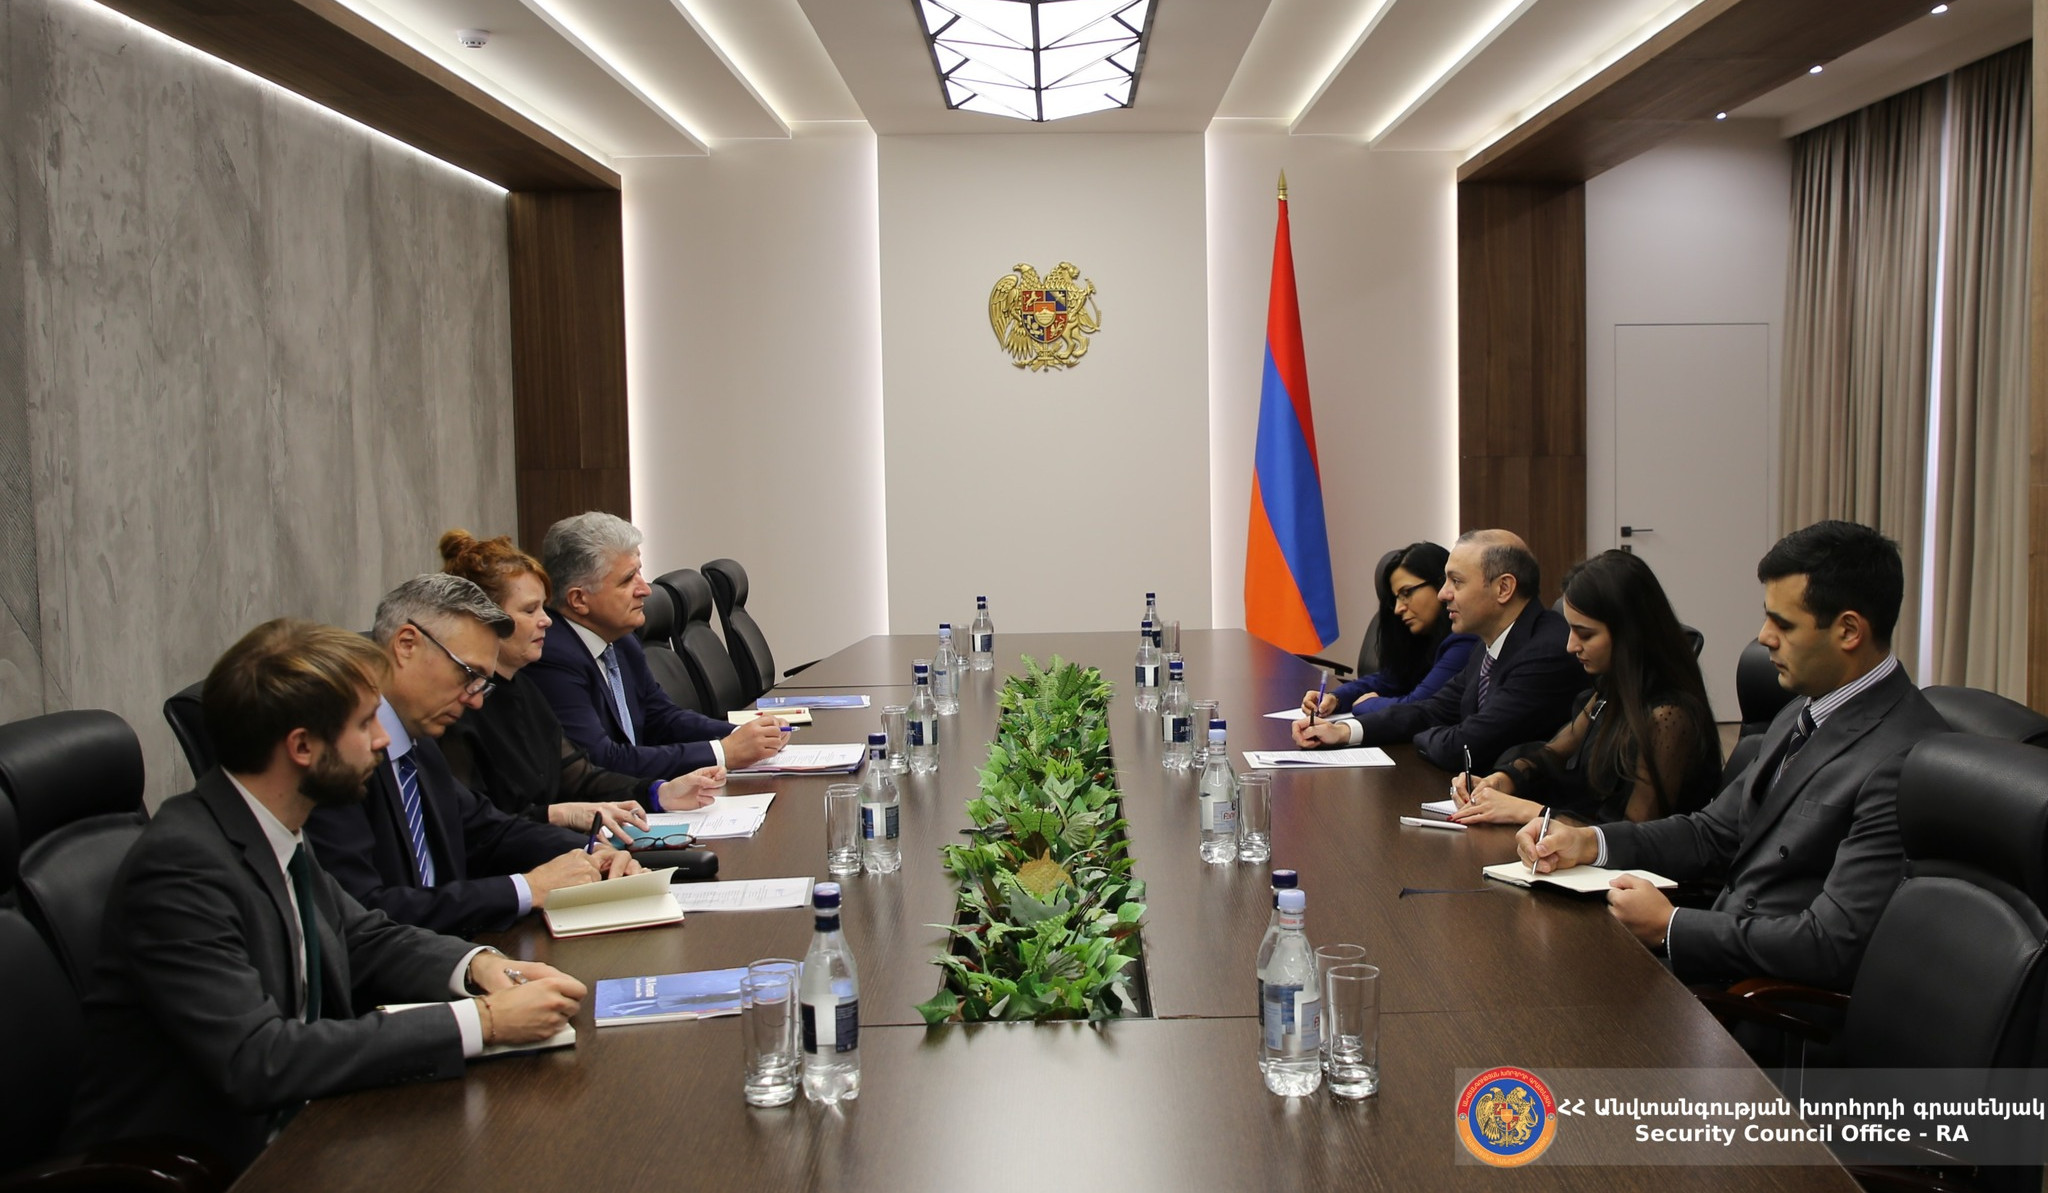 Արմեն Գրիգորյանը և ՄԱԿ-ի գլխավոր քարտուղարի փոխտեղակալը քննարկել են հայ-ադրբեջանական հարաբերությունների կարգավորման բանակցային գործընթացը